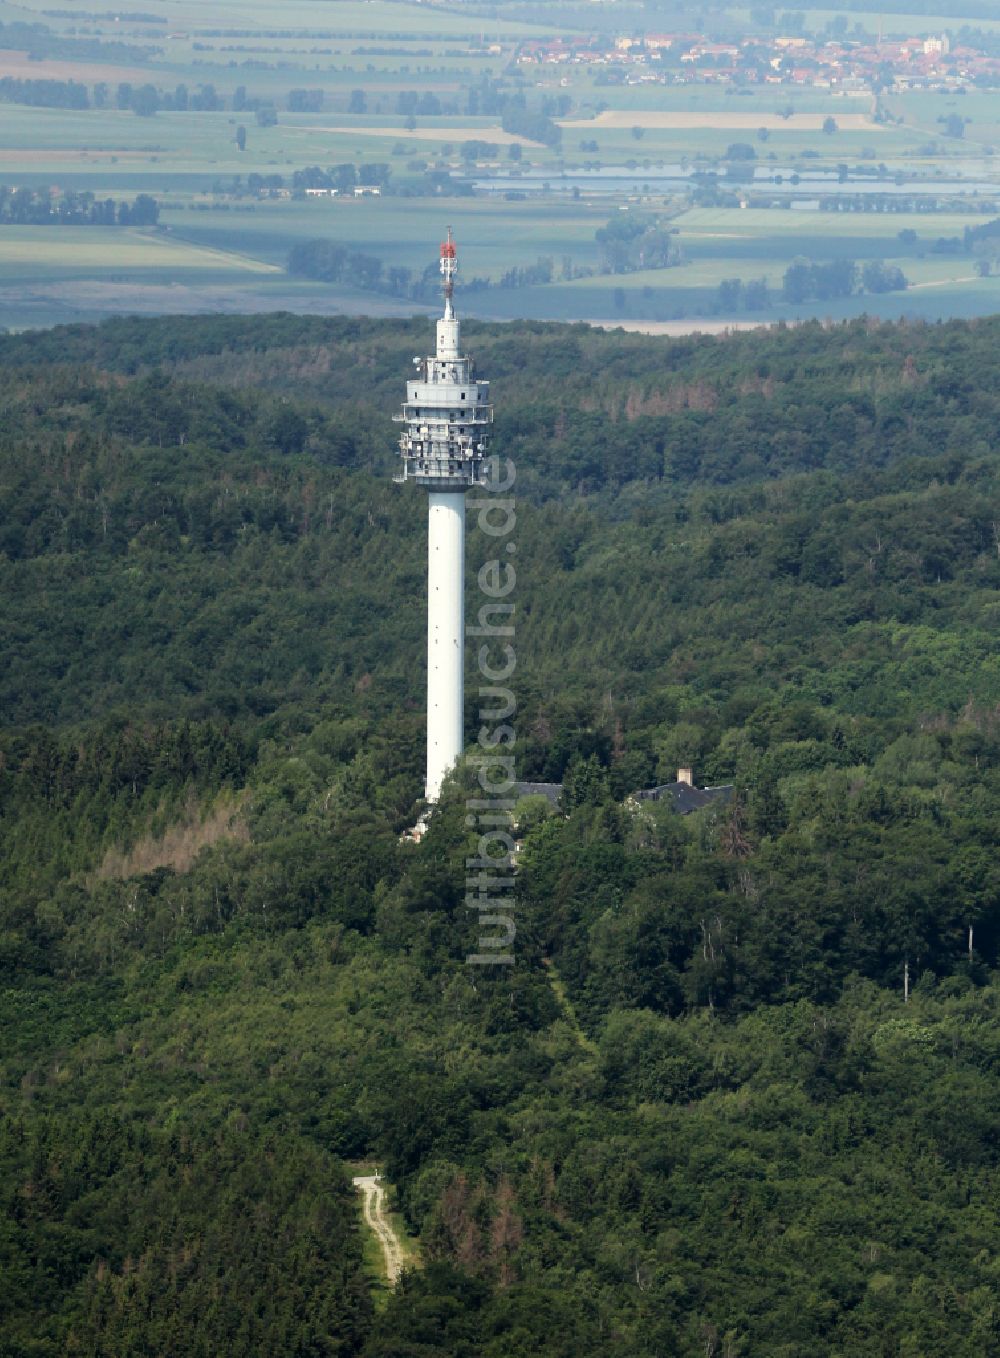 Steinthaleben von oben - Fernmeldeturm und Fernsehturm in Steinthaleben im Bundesland Thüringen, Deutschland